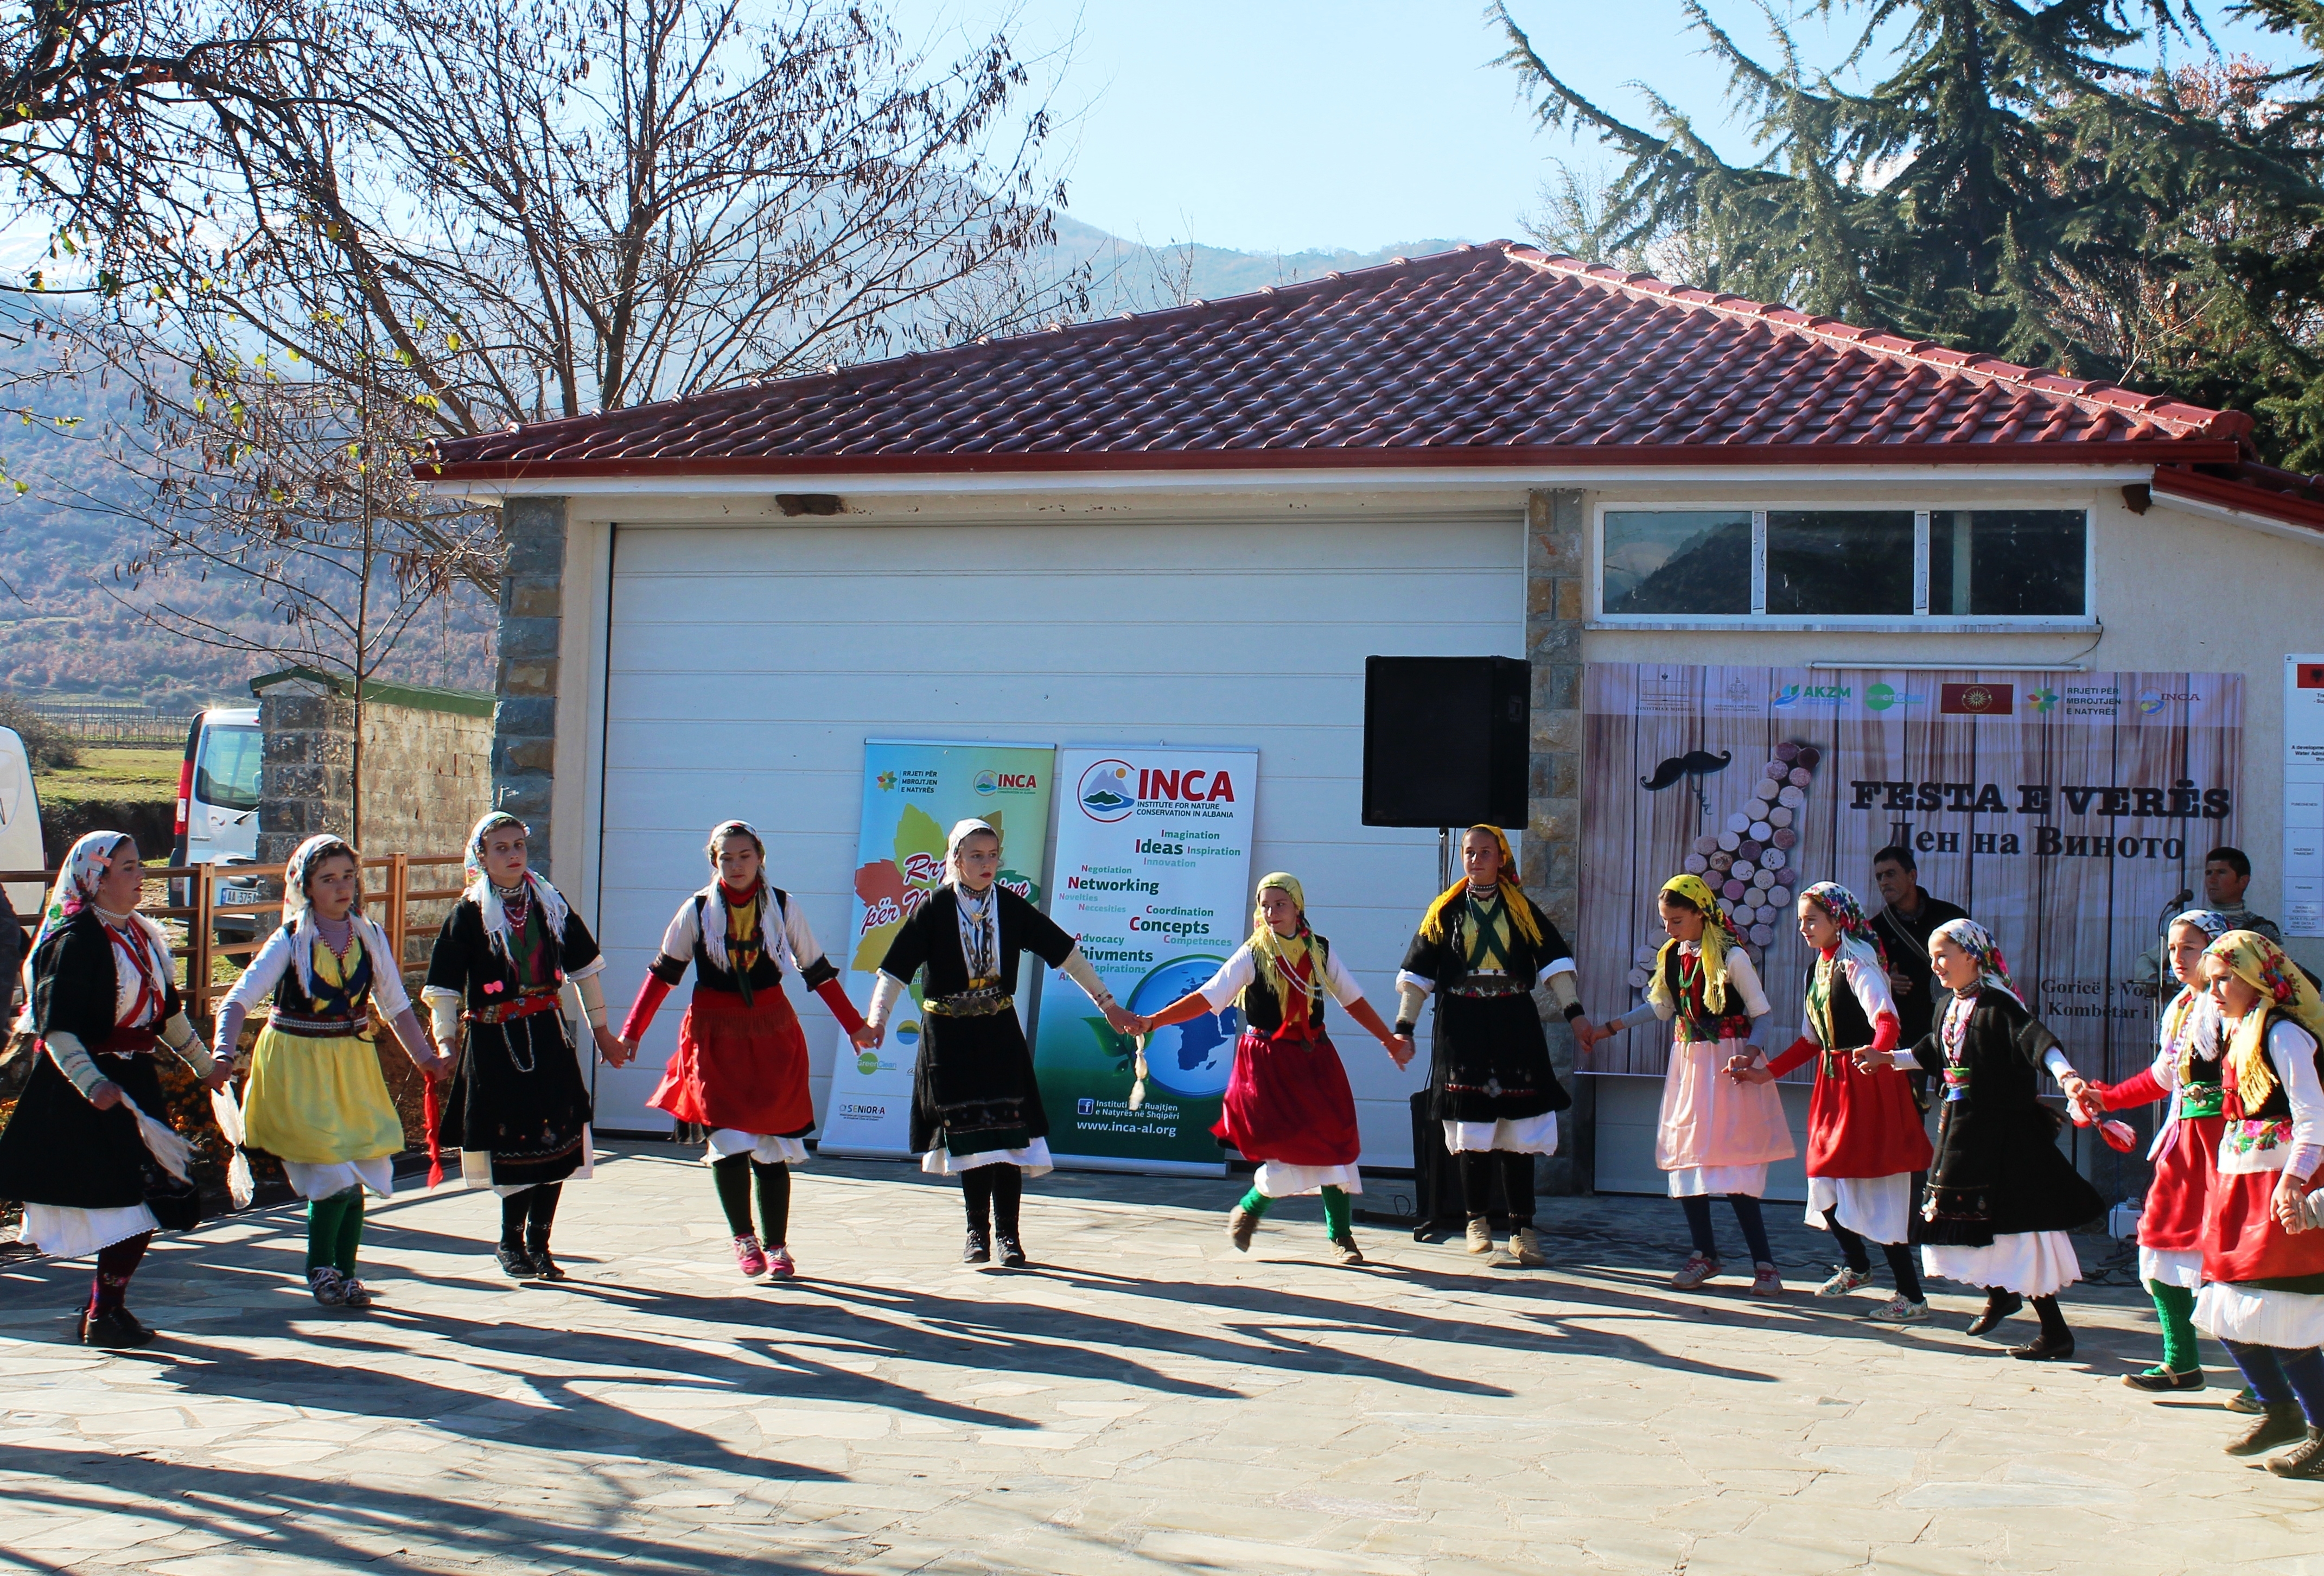 Festohet Dita e Verës në Parkun Kombëtar të Prespës